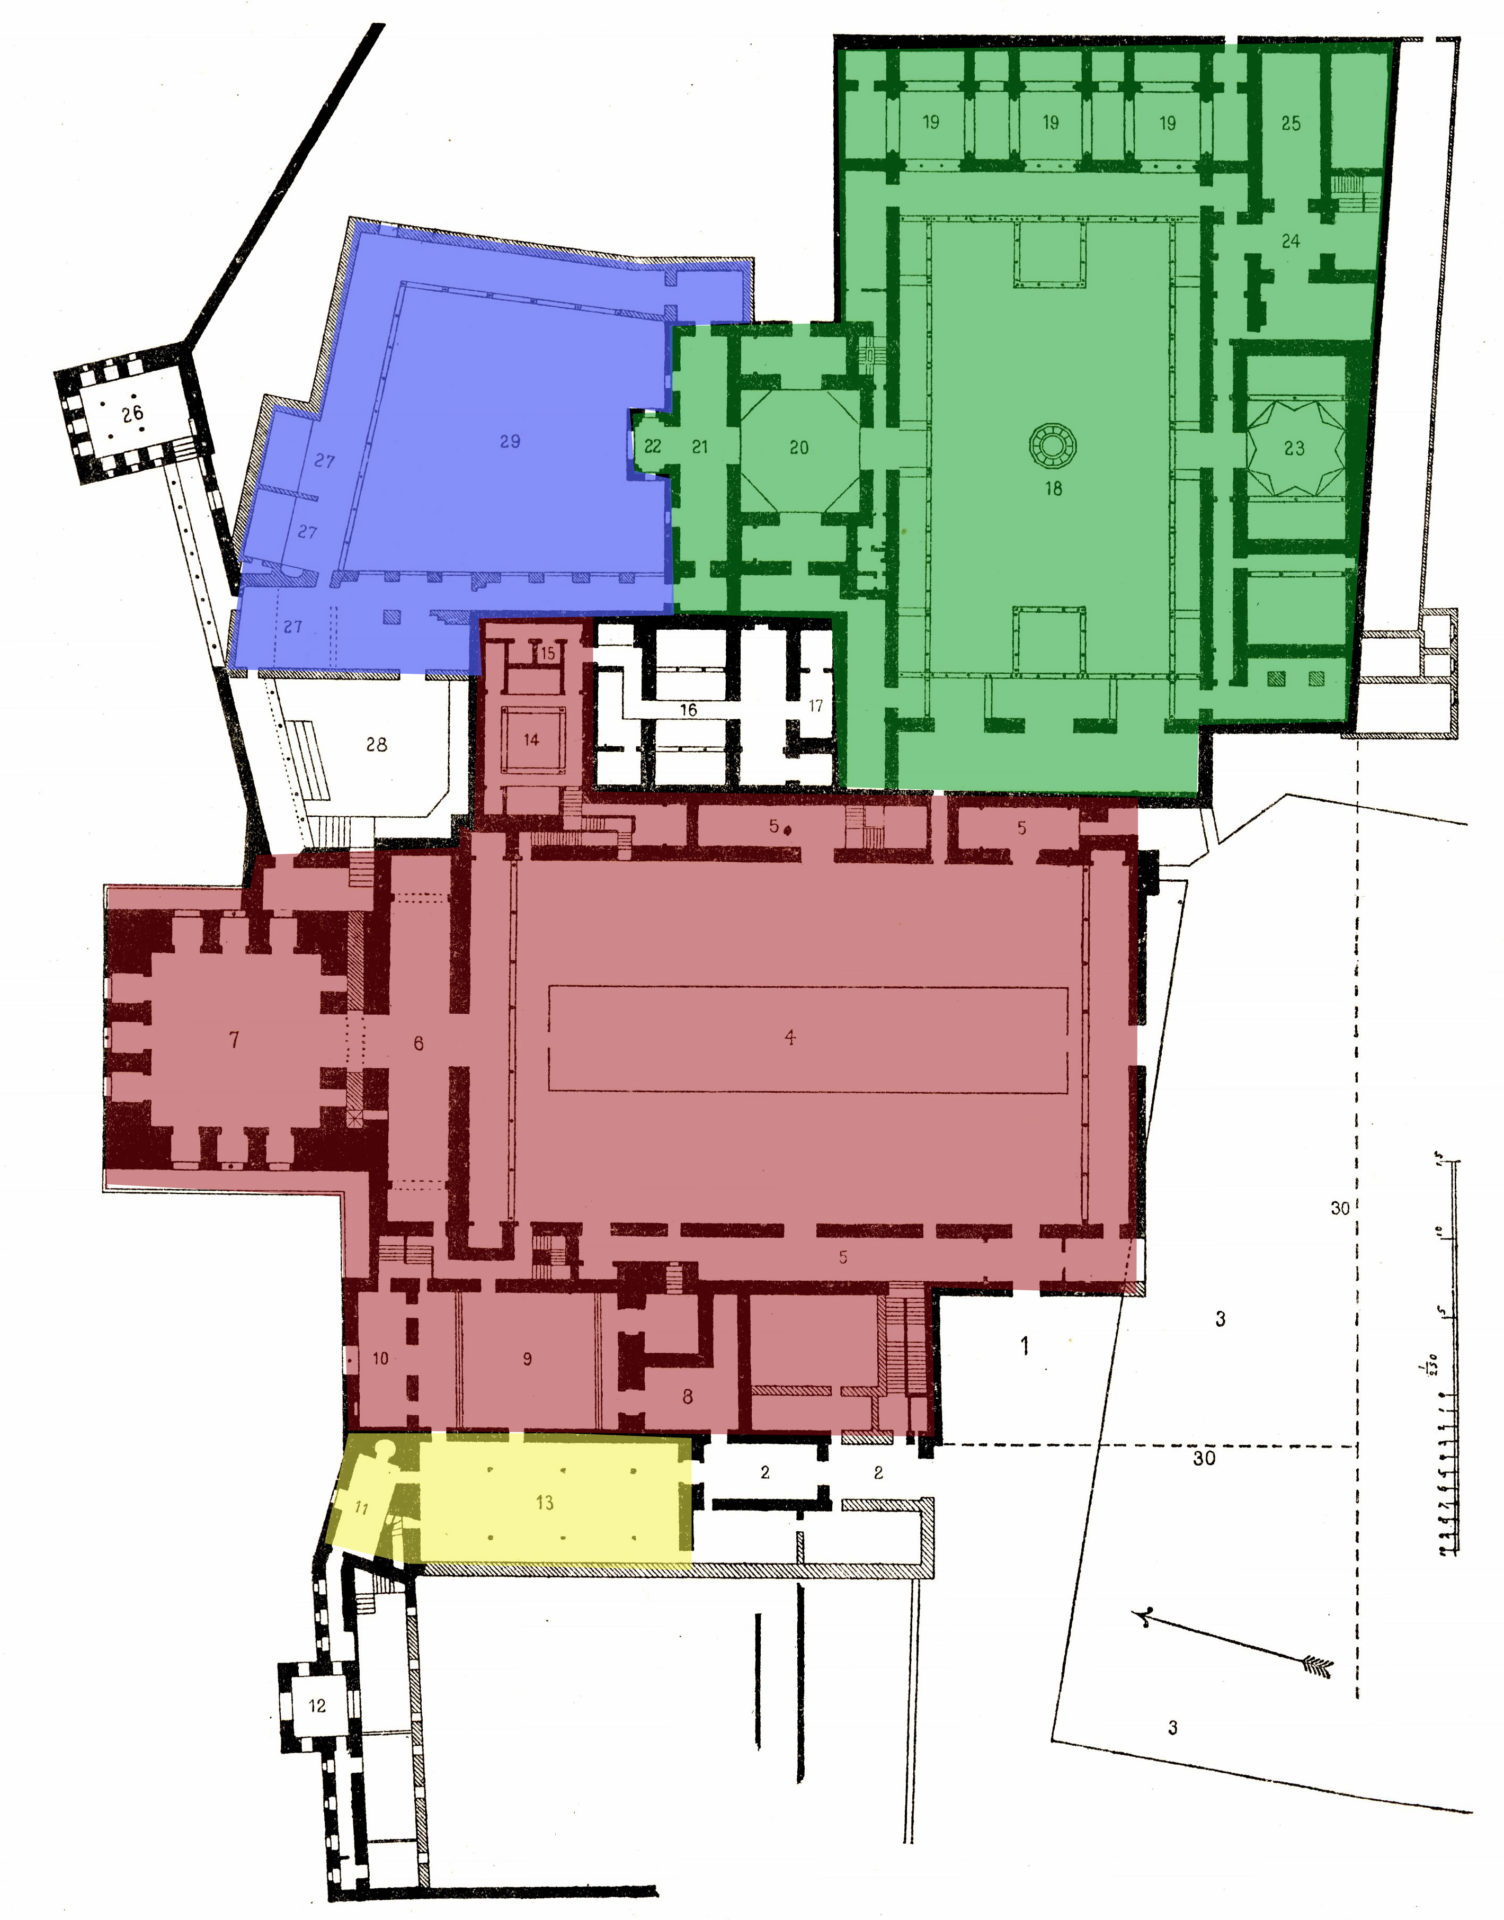 アルハンブラ宮殿の案内図